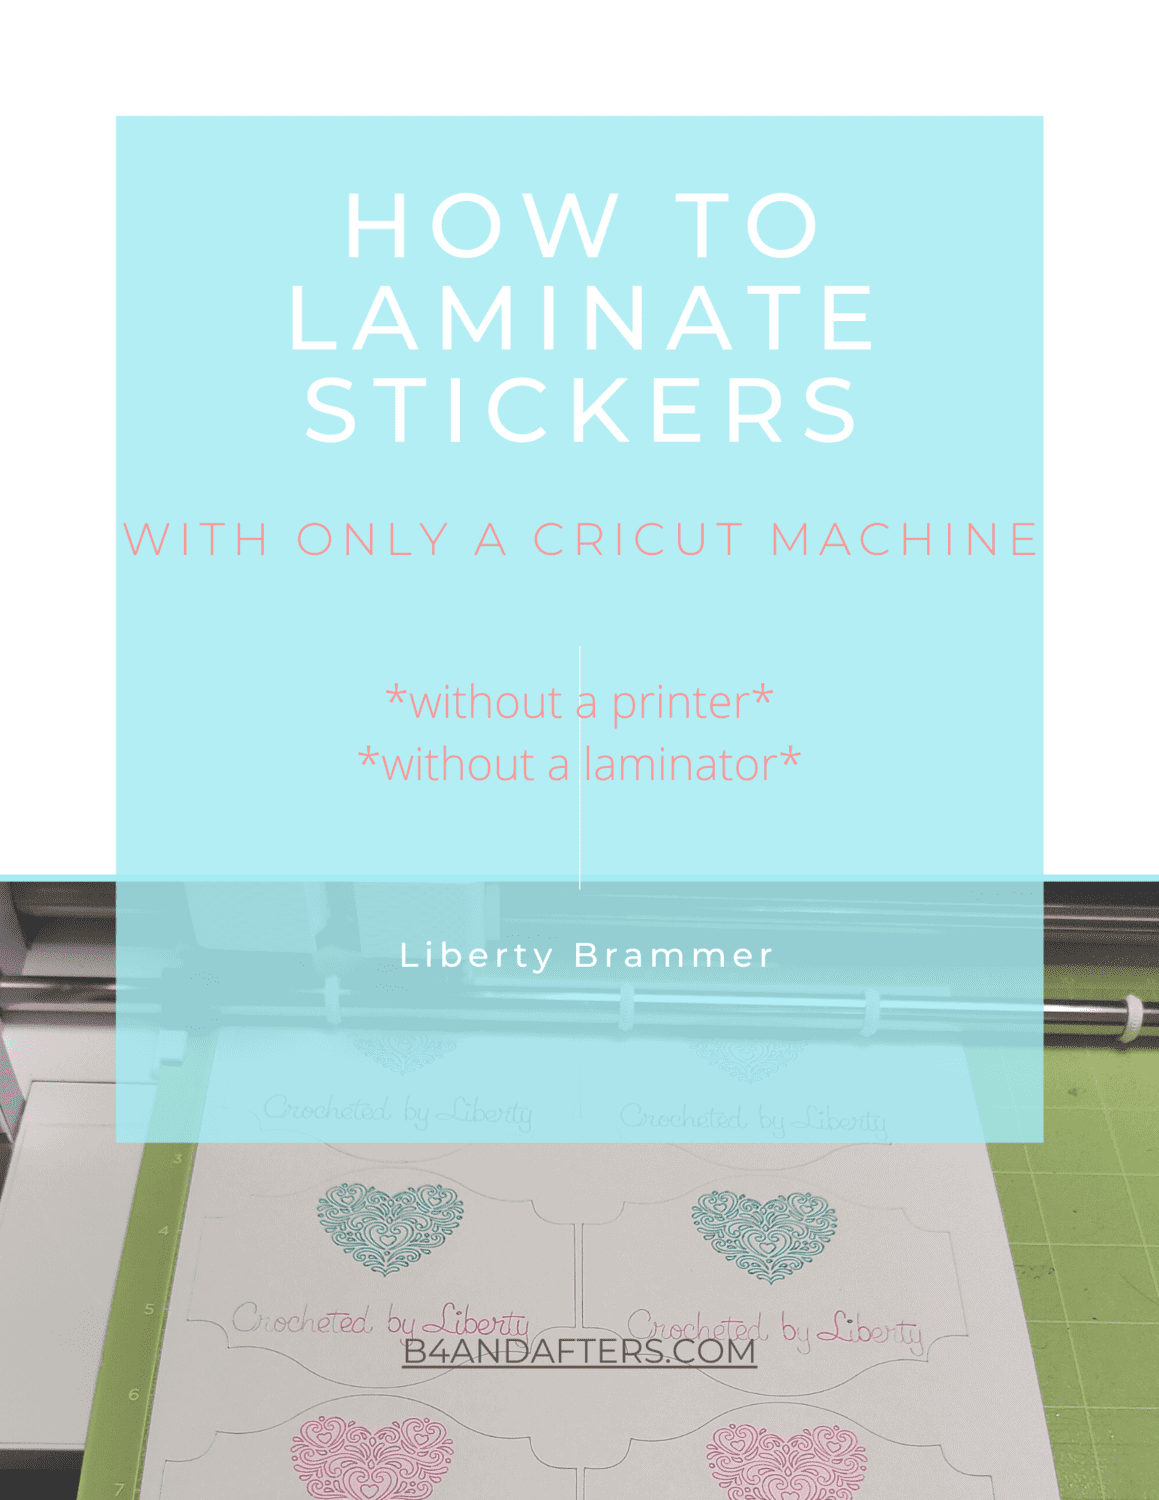 Laminate Stickers with a Cricut machine